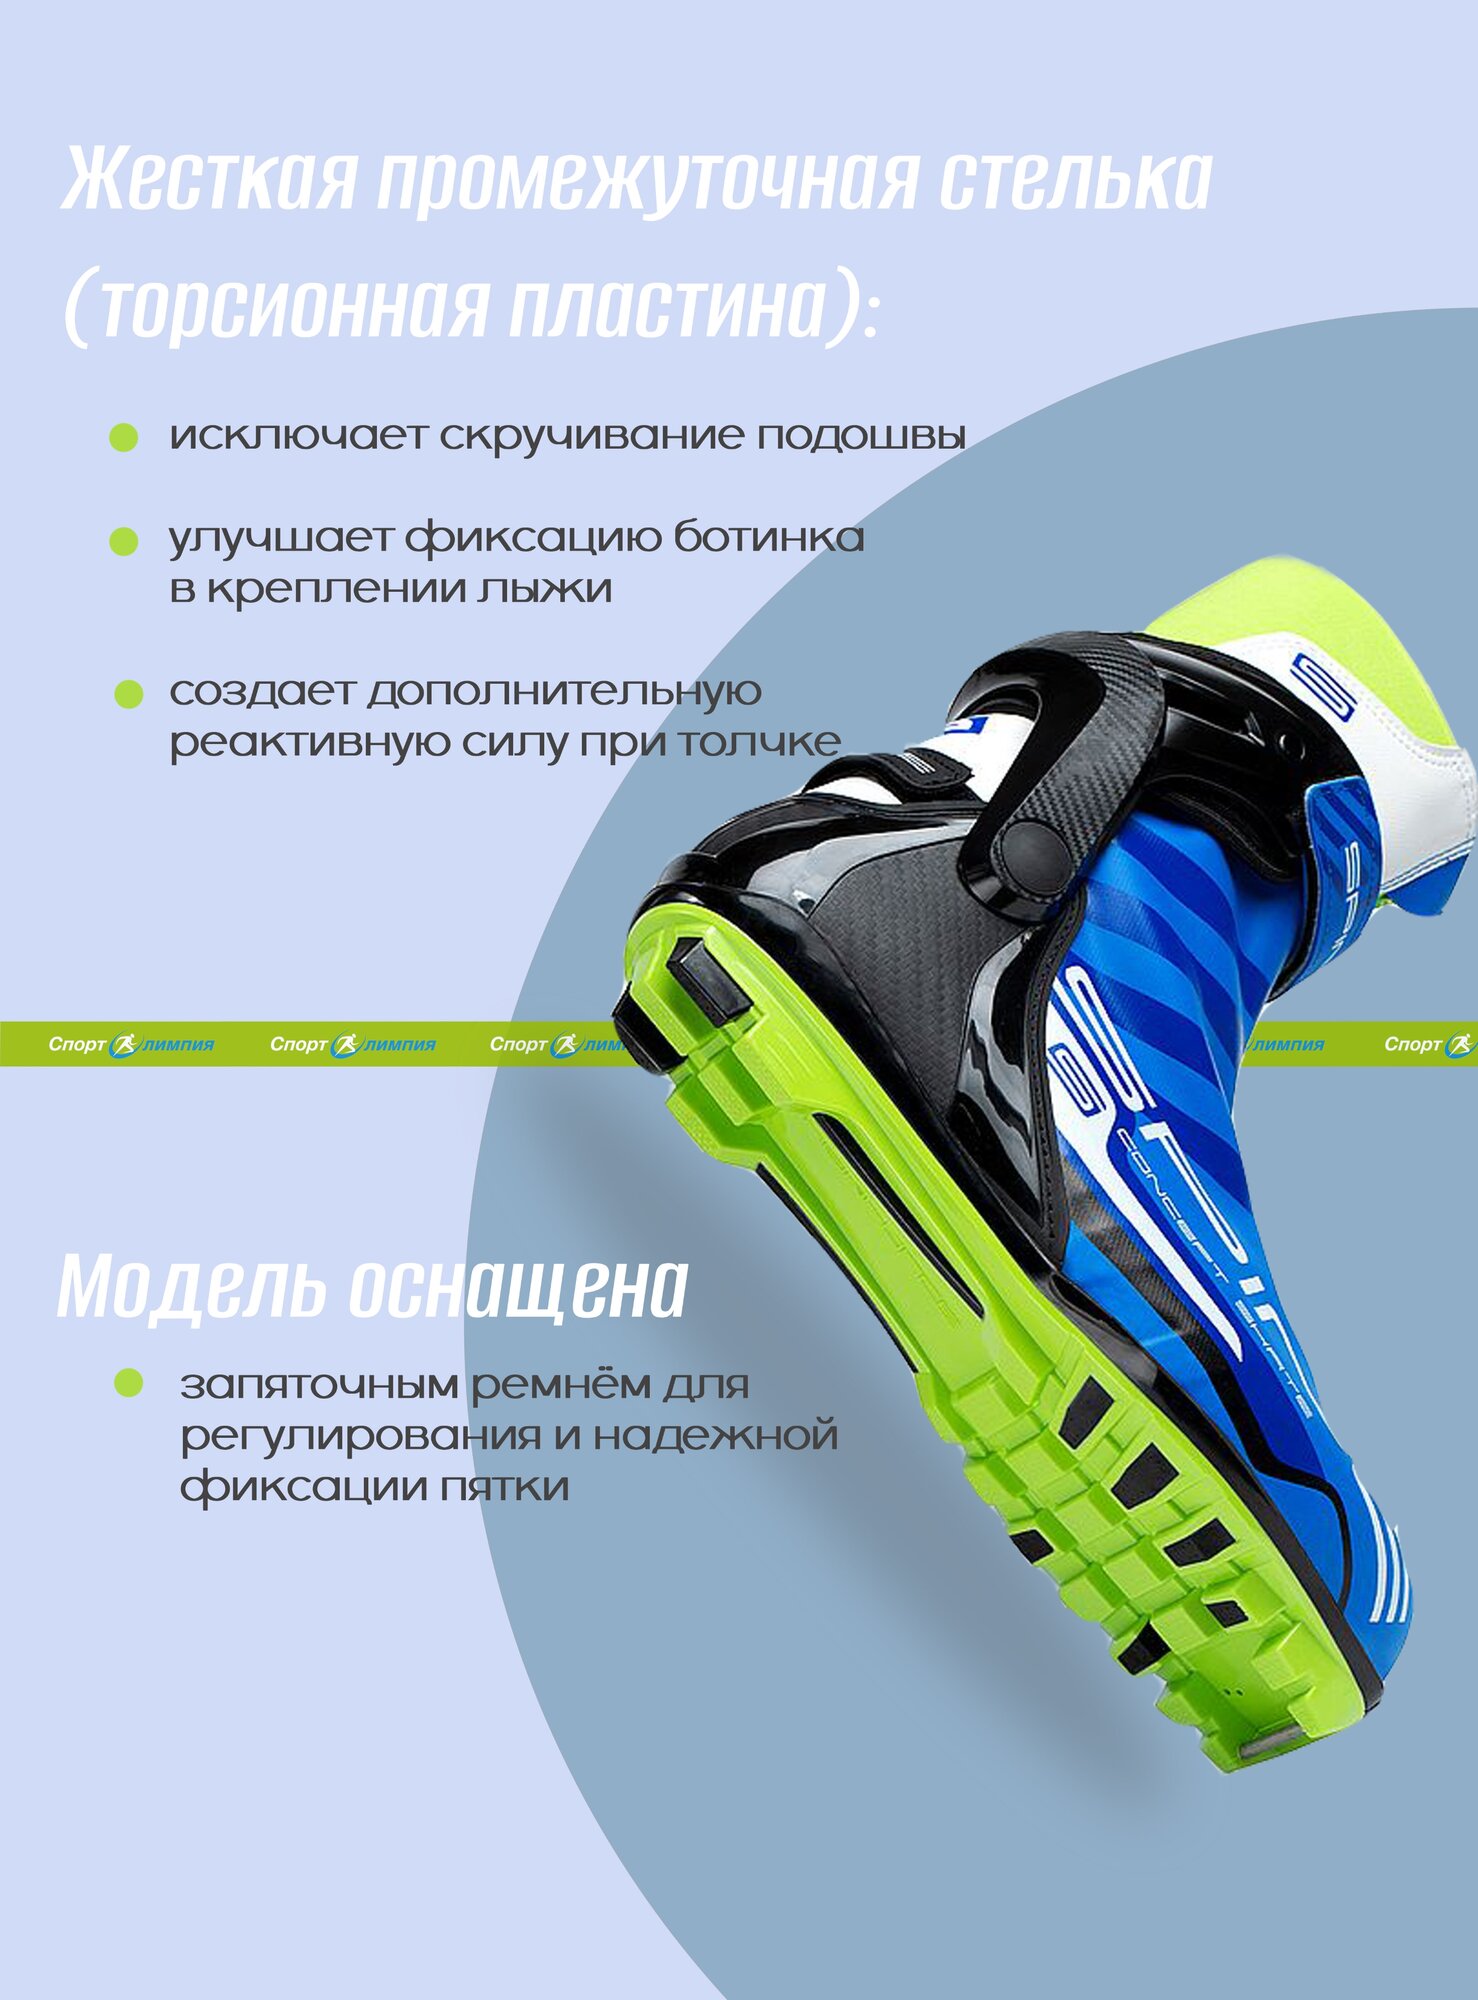 Ботинки для беговых лыж Spine Concept Skate PRO, Синий, размер 46 - фото №2